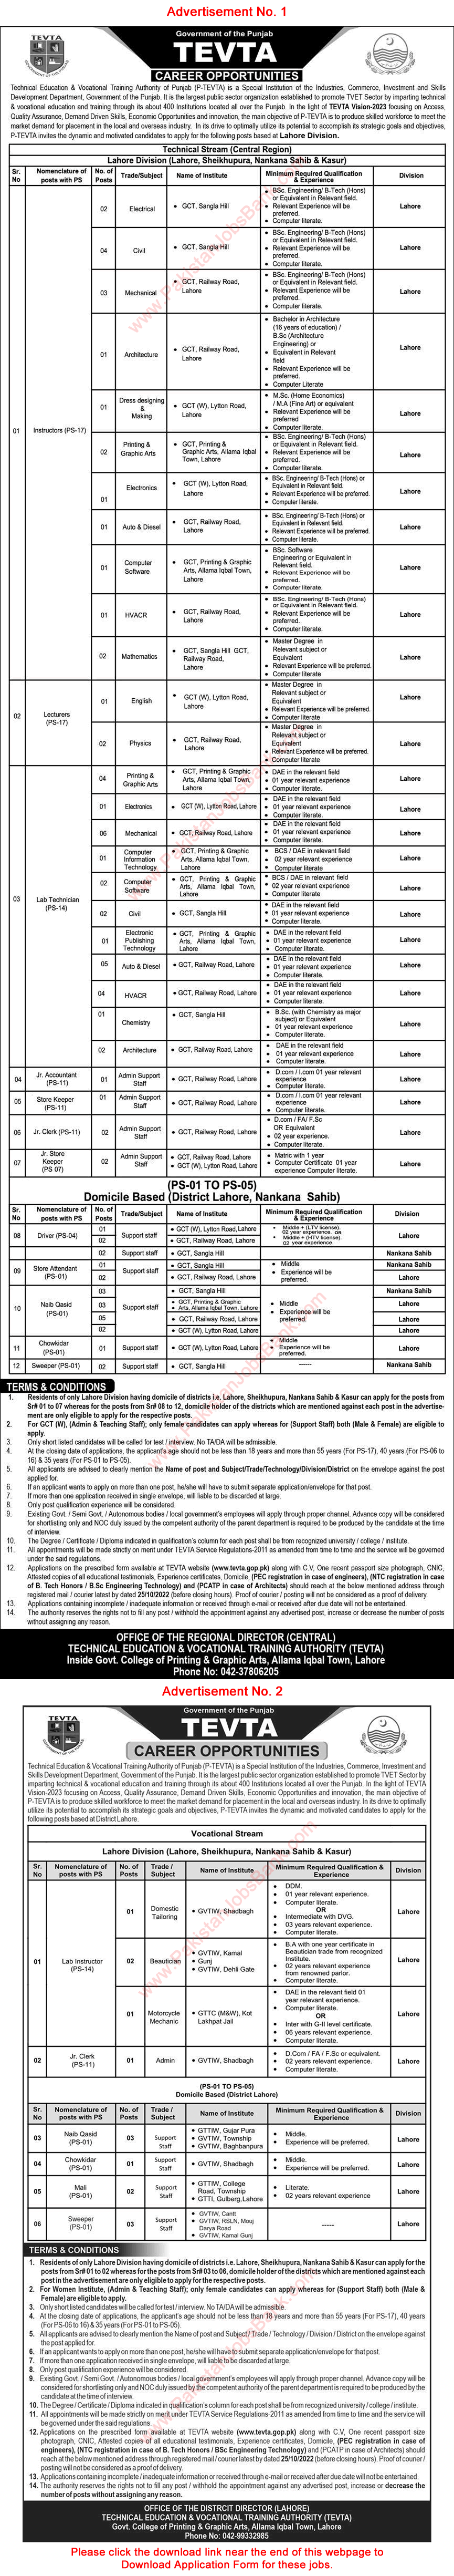 TEVTA Punjab Jobs October 2022 Application Form Technicians, Instructors & Others Latest